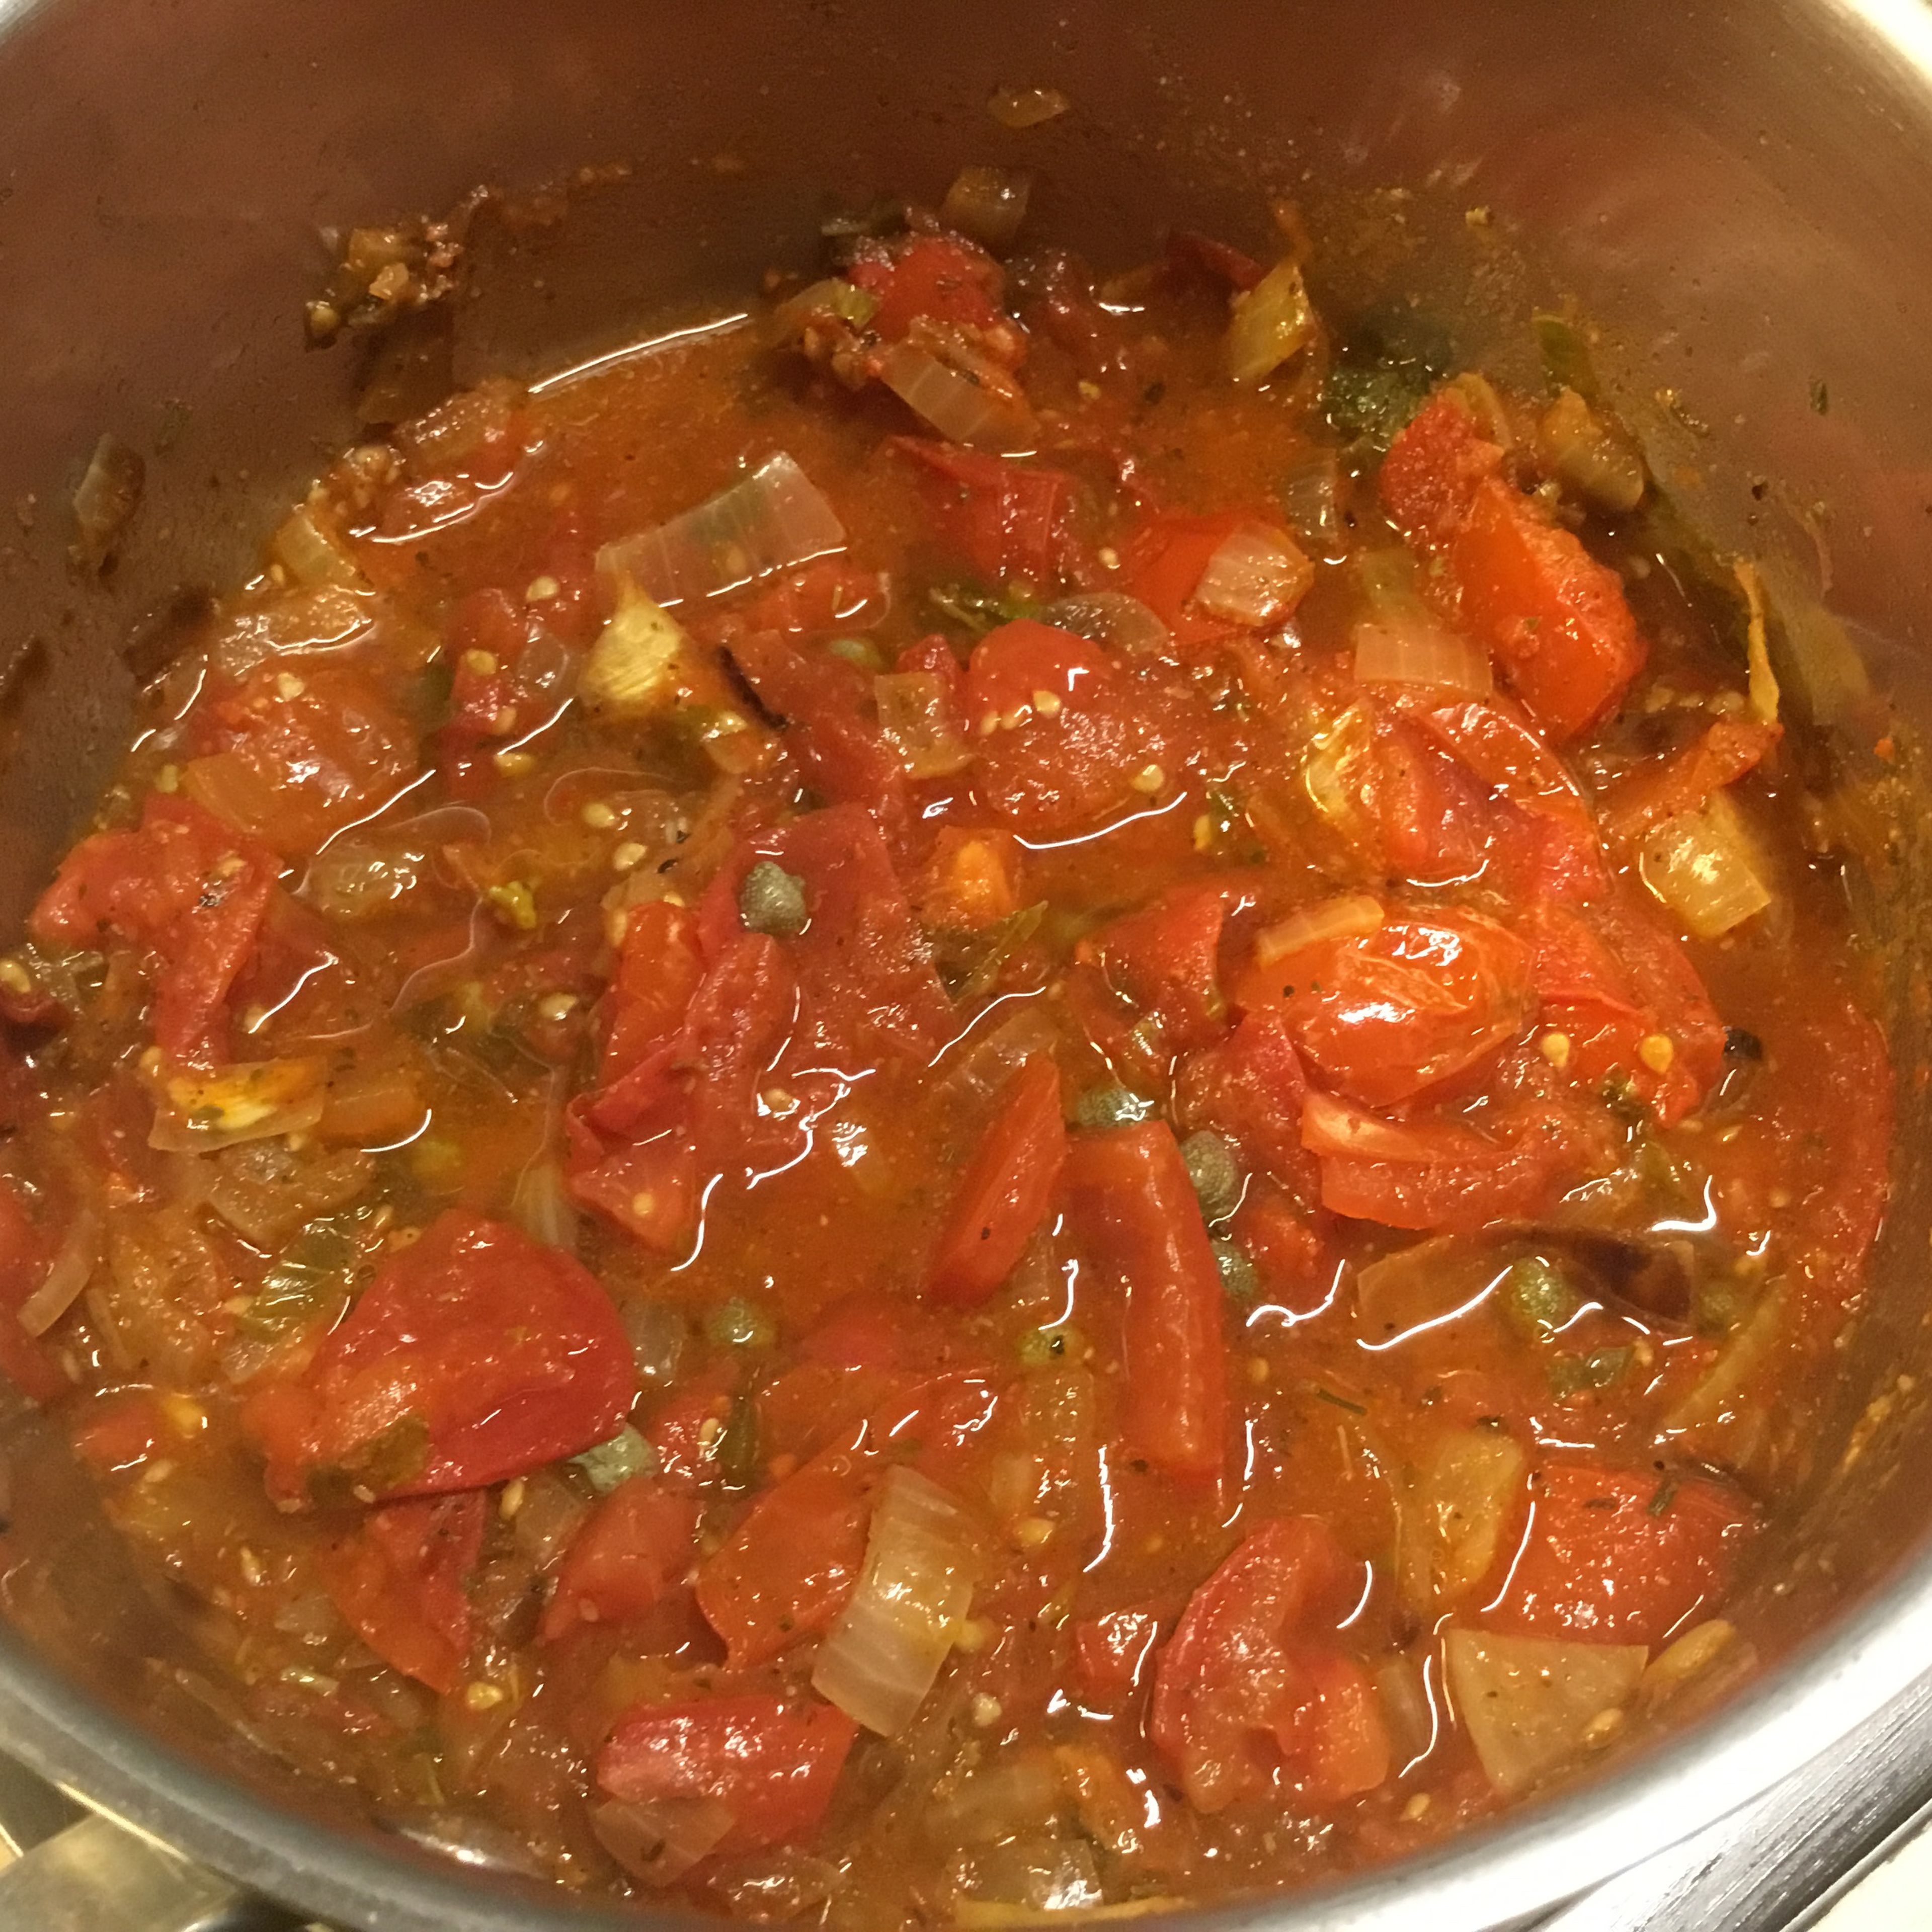 Einen einfachen Tomatensugo zubereiten mit Zwiebeln anschwitzen, Tomaten würfeln, etwas salzen und pfeffern, etwas italienische Kräuter oder Kräuterder Provence, ganz wenig Kapern. Alles 5-10 Minuten simmern lassen evtl. 50-100 ml Wasser zufügen. Ganz am Schluß frisches Basilikum.